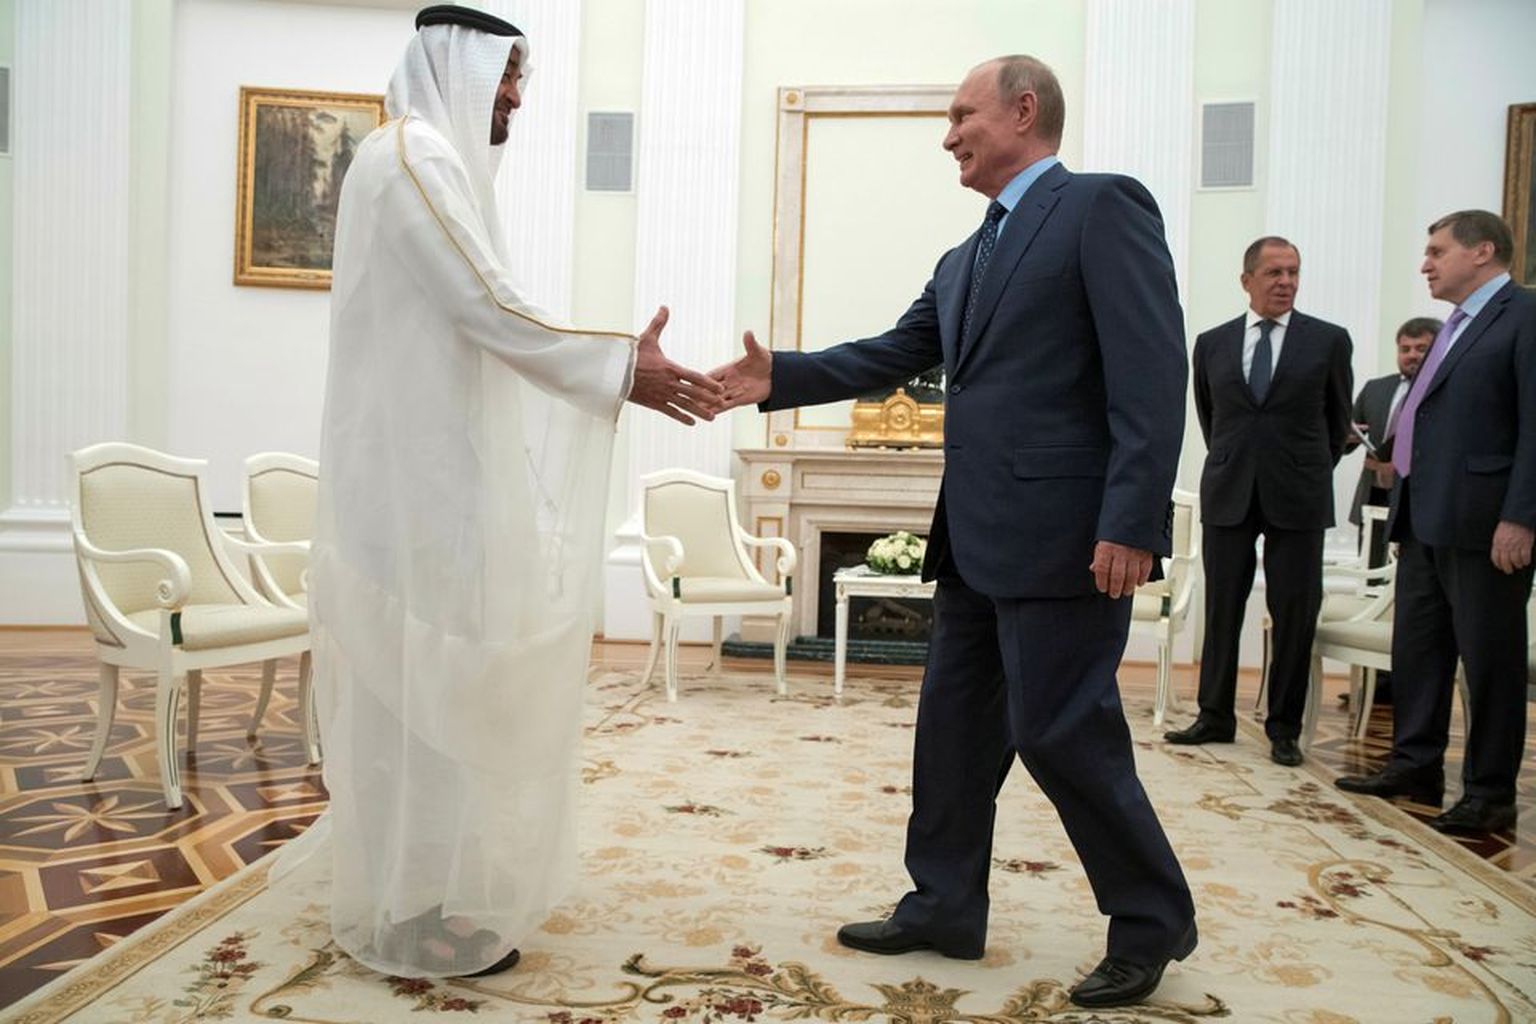 Владимир Путин обменивается рукопожатием с эмиром Абу-Даби шейхом Мухаммедом ибн Заидом Аль Нахайяном из Объединенных Арабских Эмиратов во время встречи в Кремле в Москве, Россия, 1 июня 2018 года.